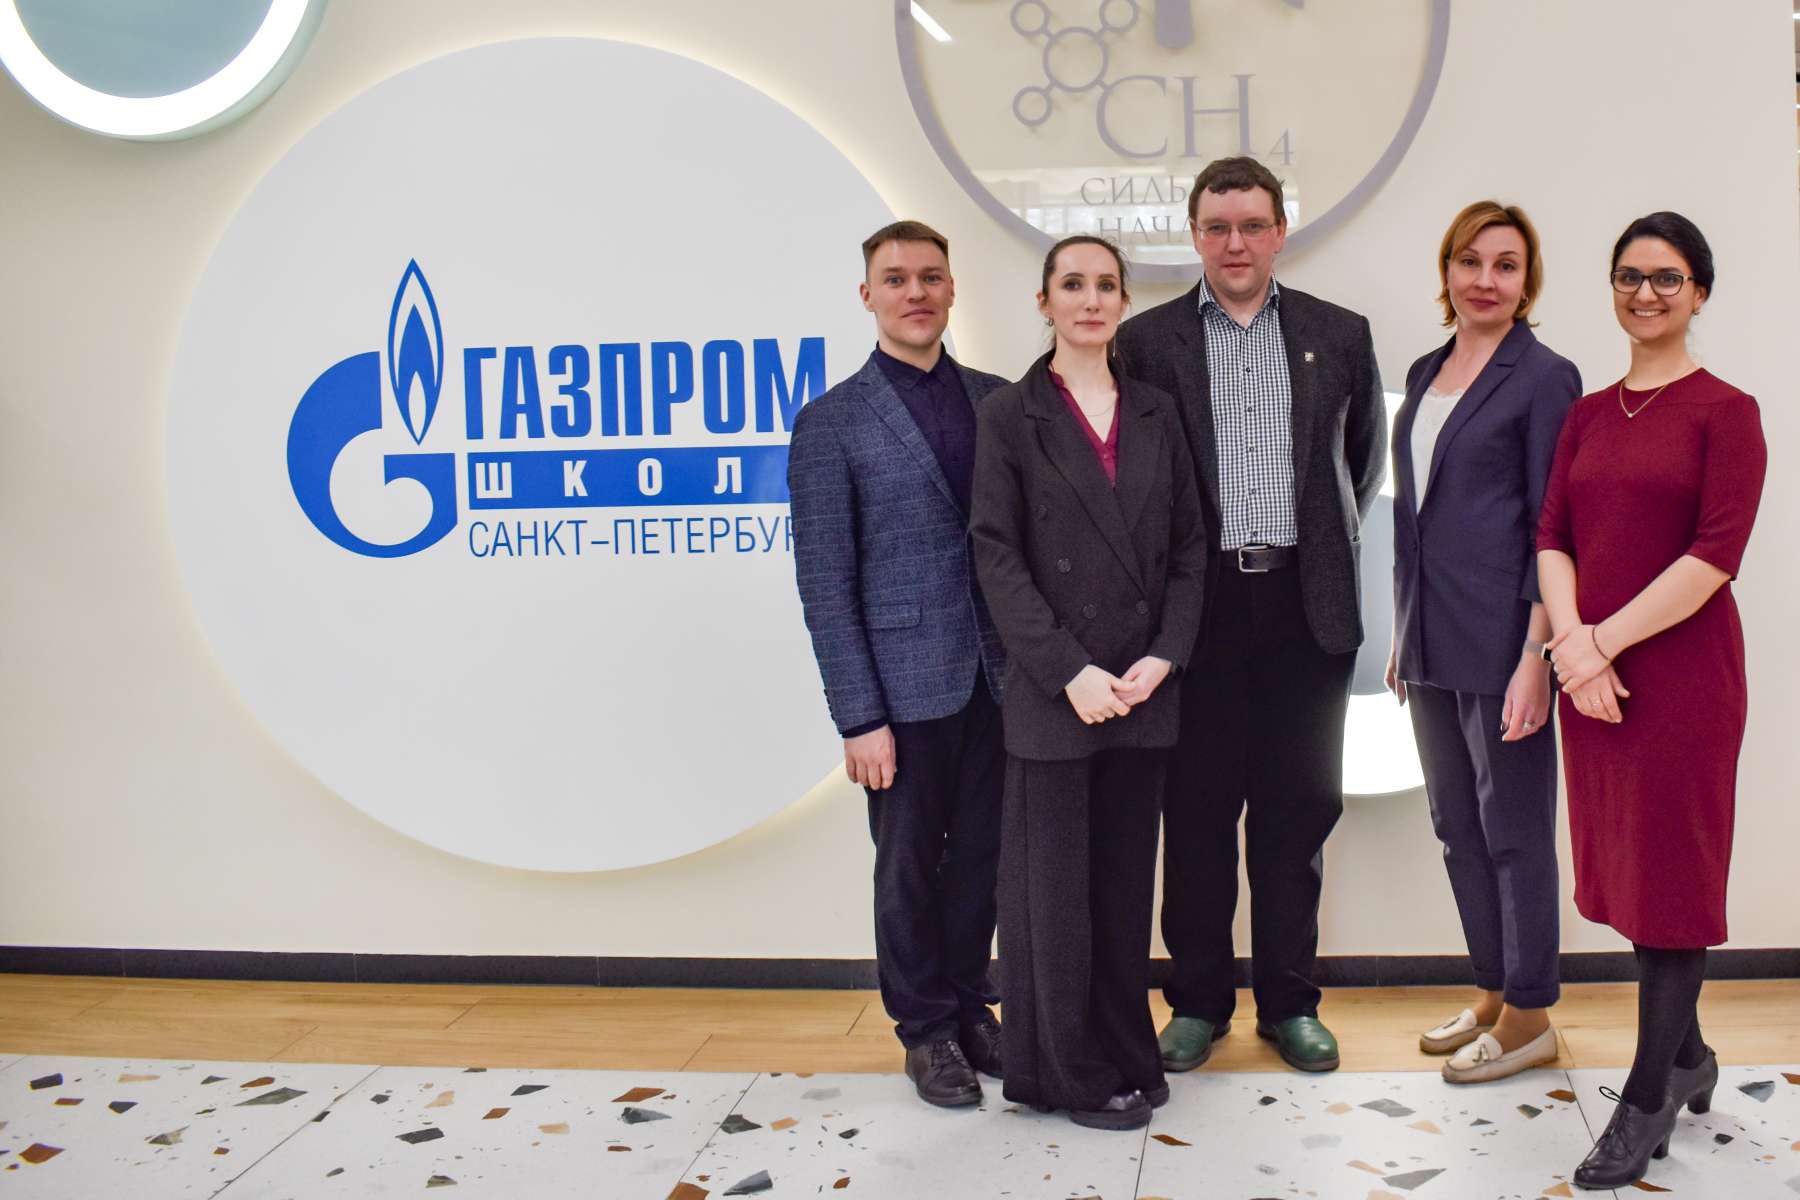 Преподаватели ИСИ провели открытой урок в Газпром школе для учеников 8, 9 и 10 классов